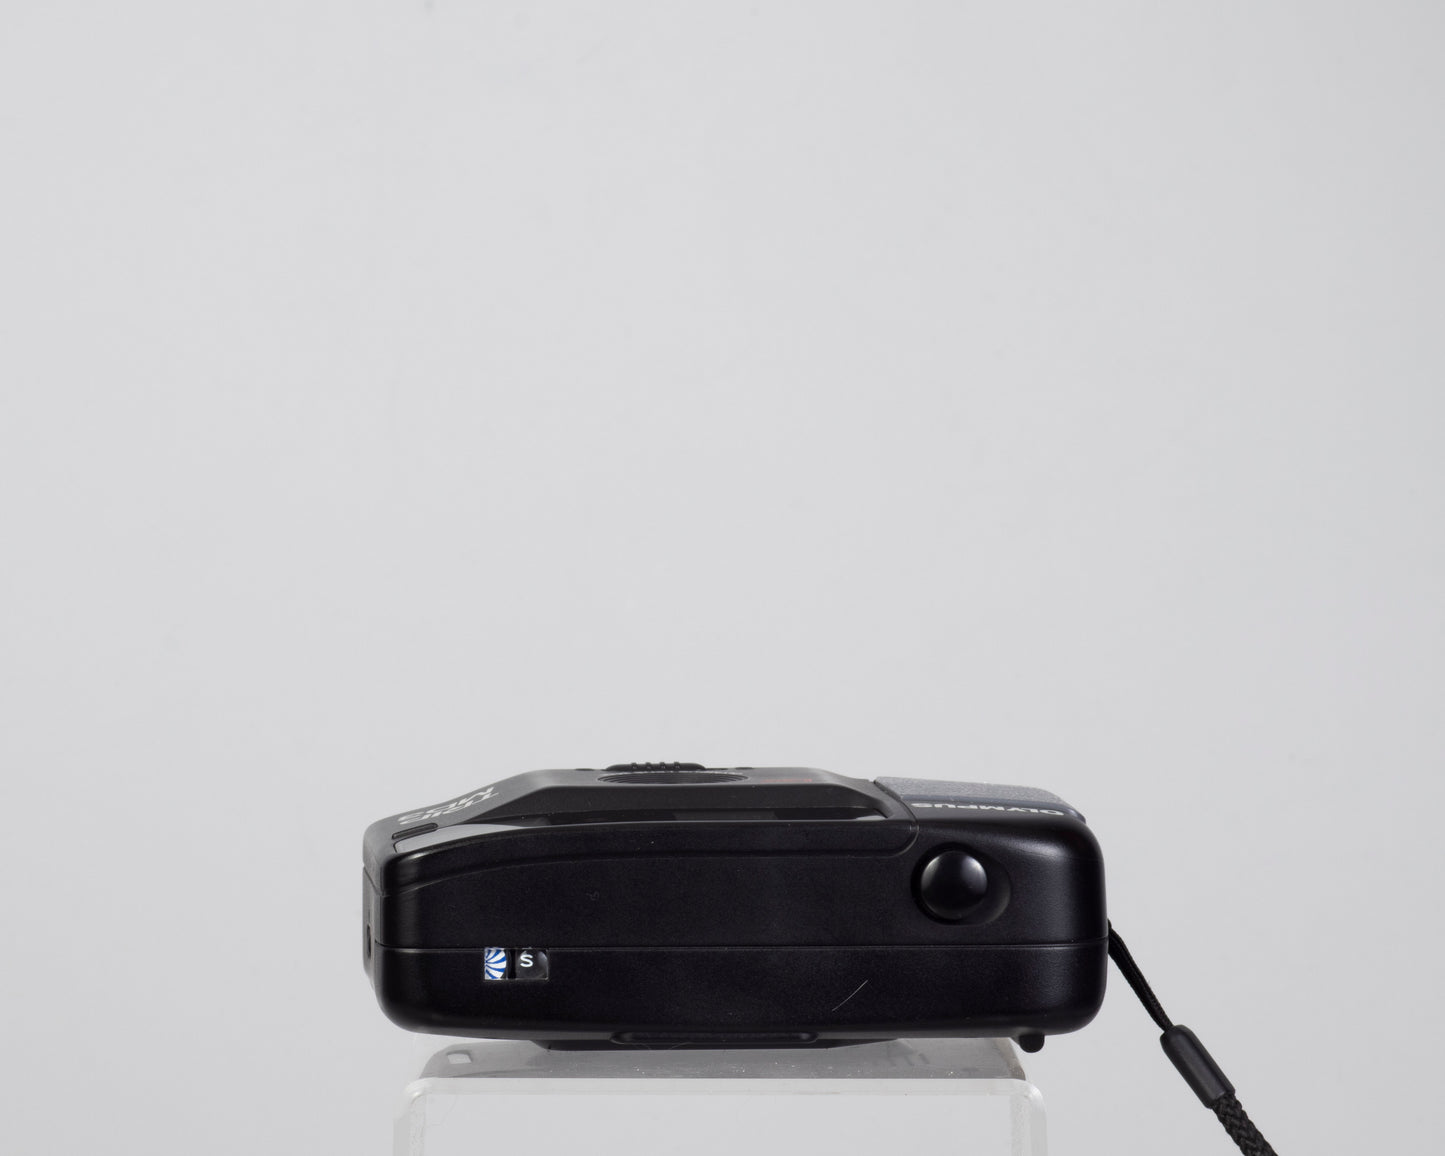 Olympus Trip MD3 35mm camera w/case (serial 06430905)